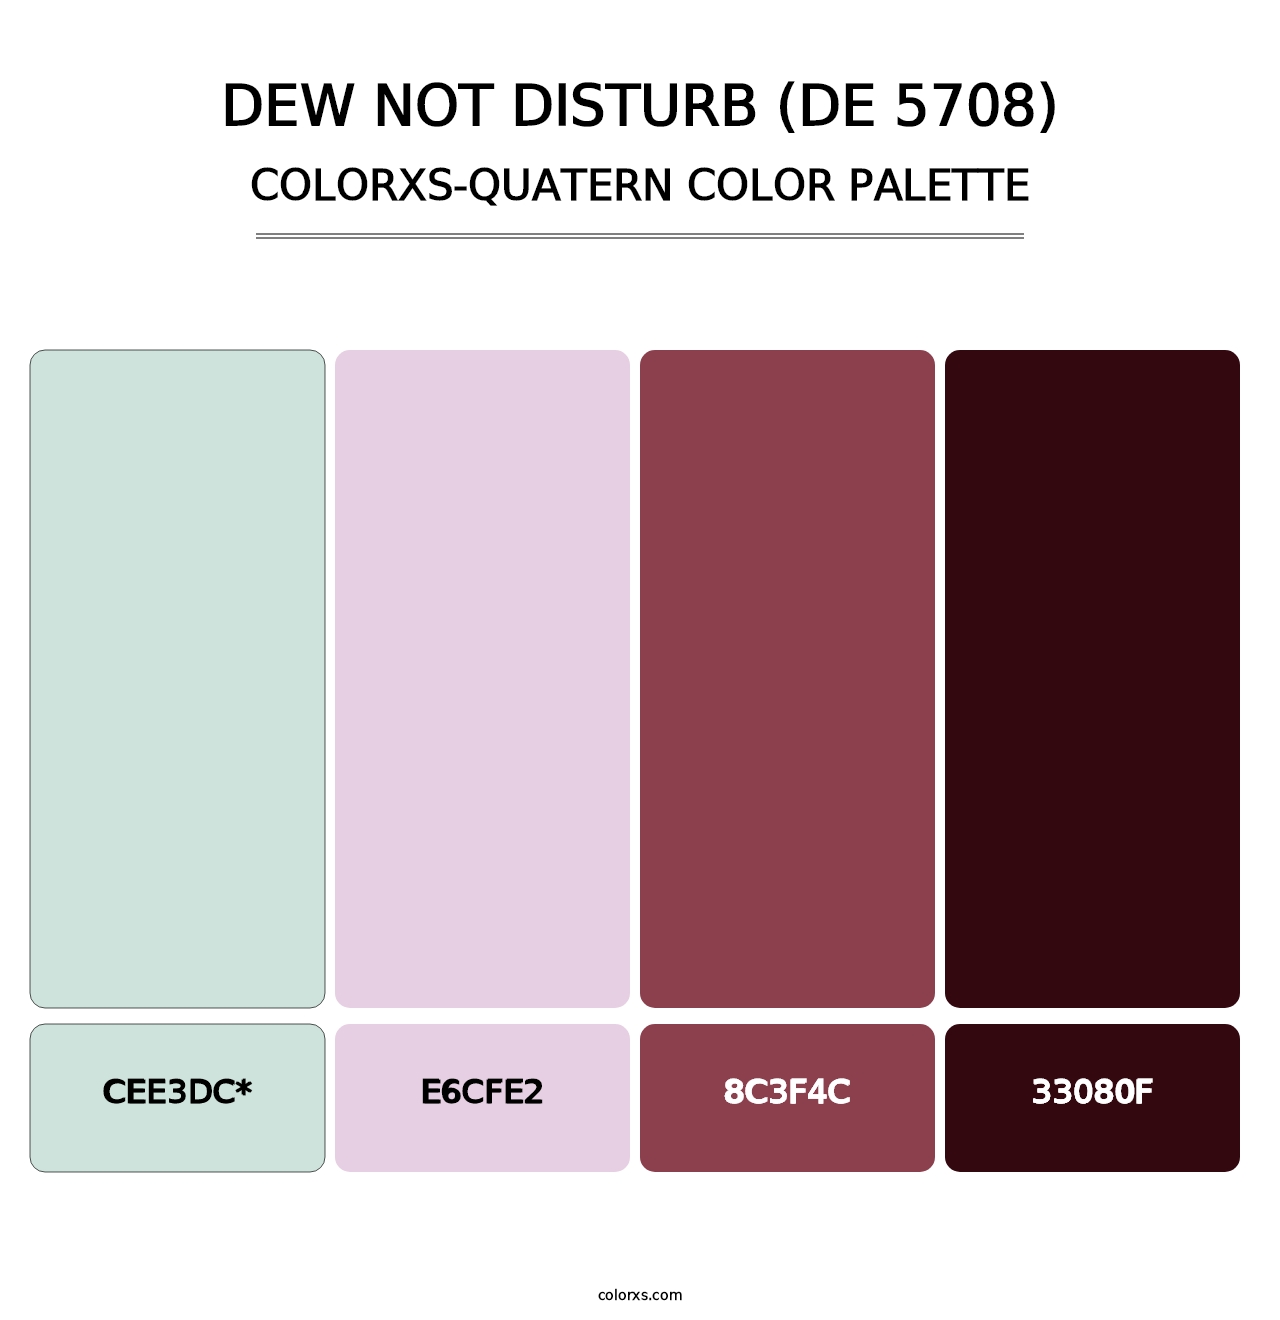 Dew Not Disturb (DE 5708) - Colorxs Quatern Palette